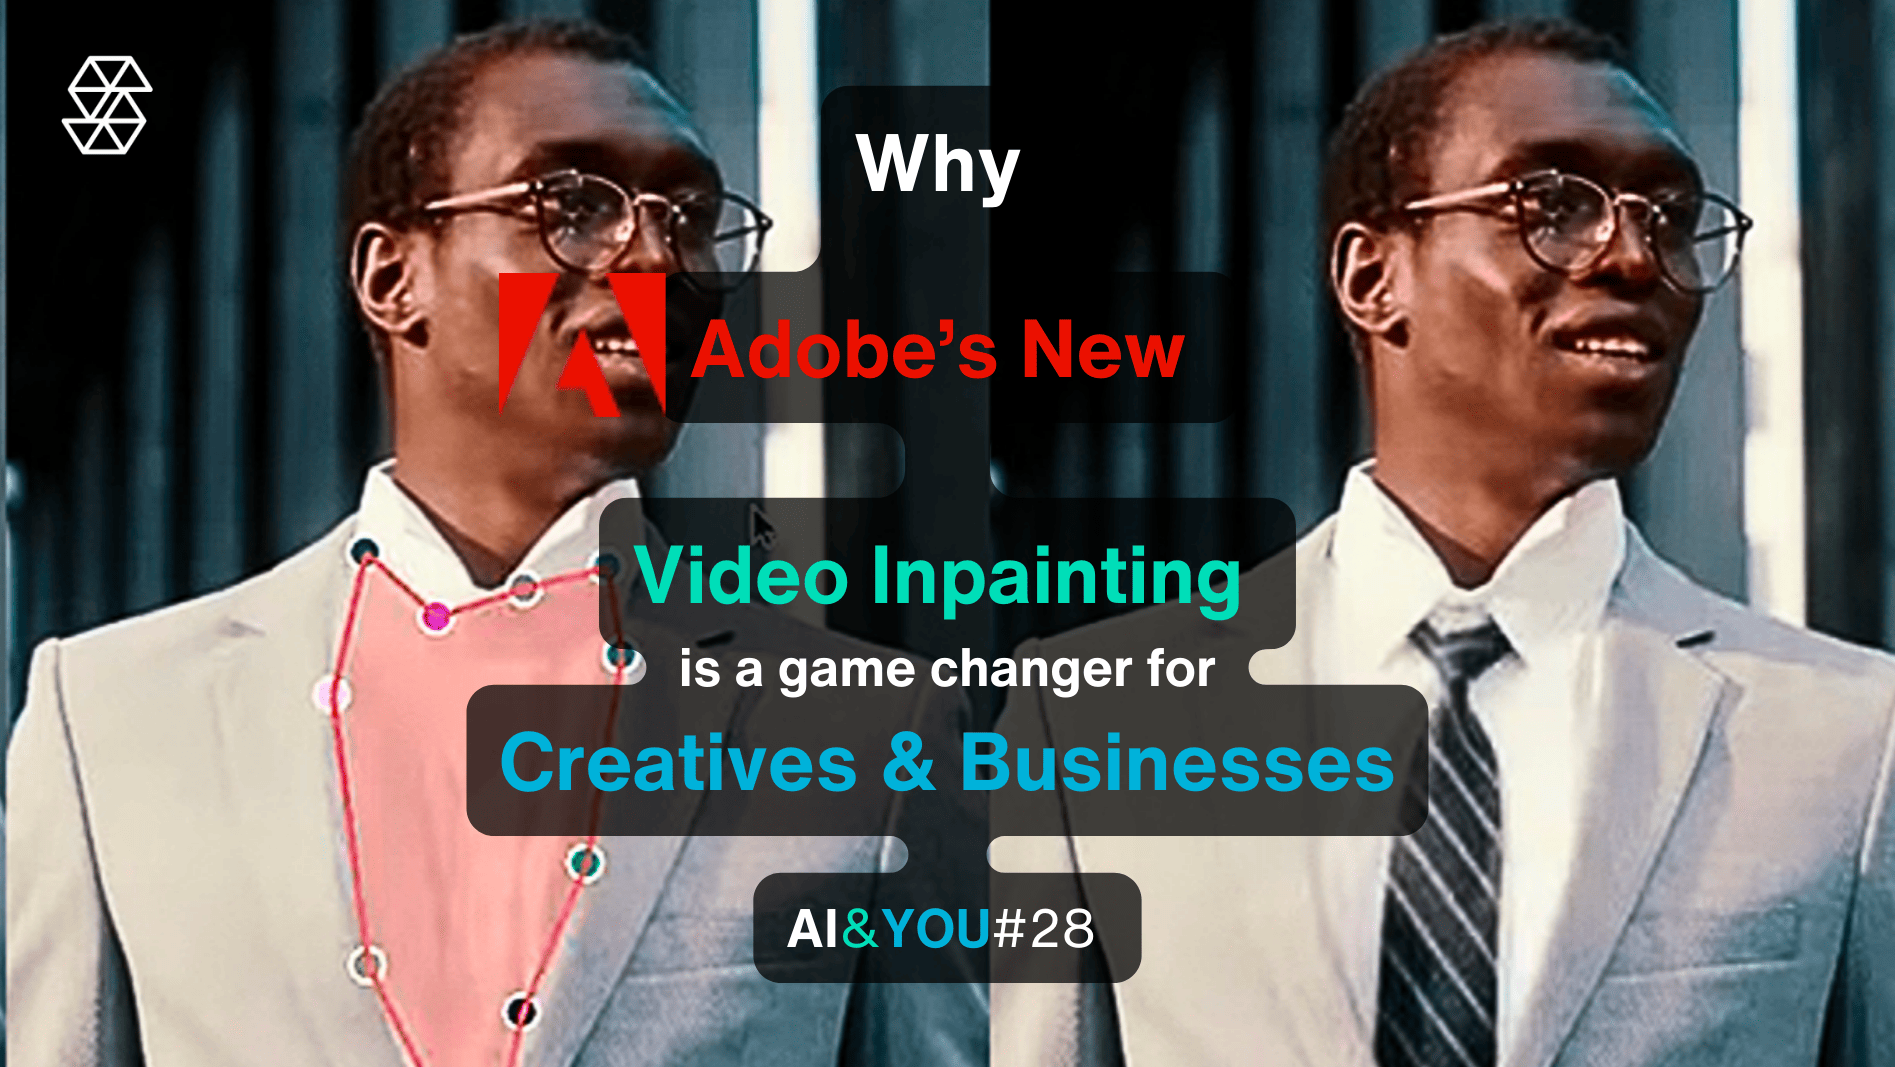 AI&YOU#28: Adobes 'Project Fast Fill' revolutioniert Video-Inpainting für Kreative und Unternehmen